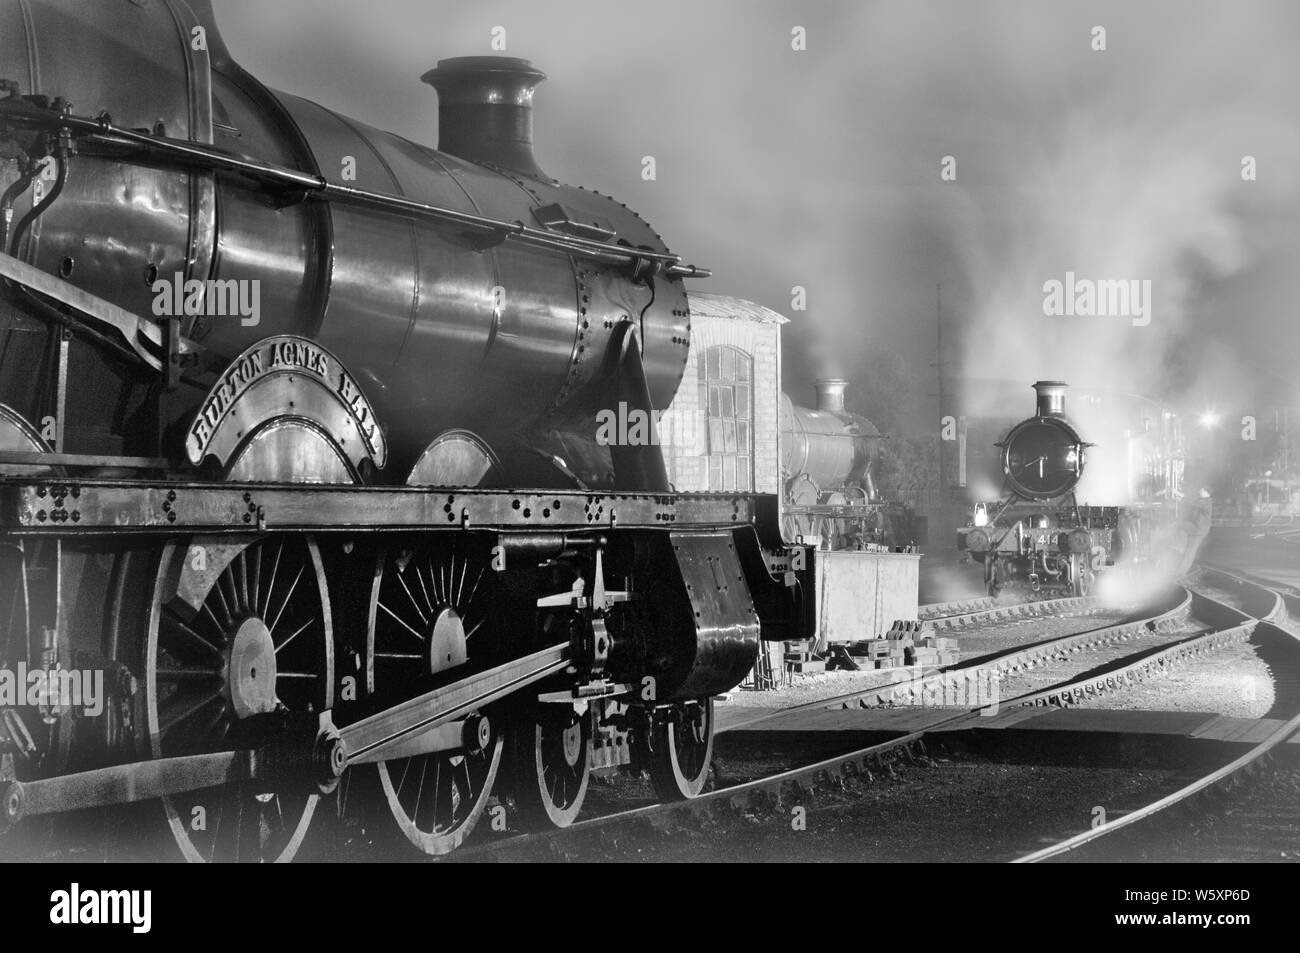 Nostalgische Nachbildung einer Eisenbahnschuppen-Szene aus der Dampfeisenbahn in Schwarz-Weiß, die die vergangenen Glanztage unterstreicht. Stockfoto